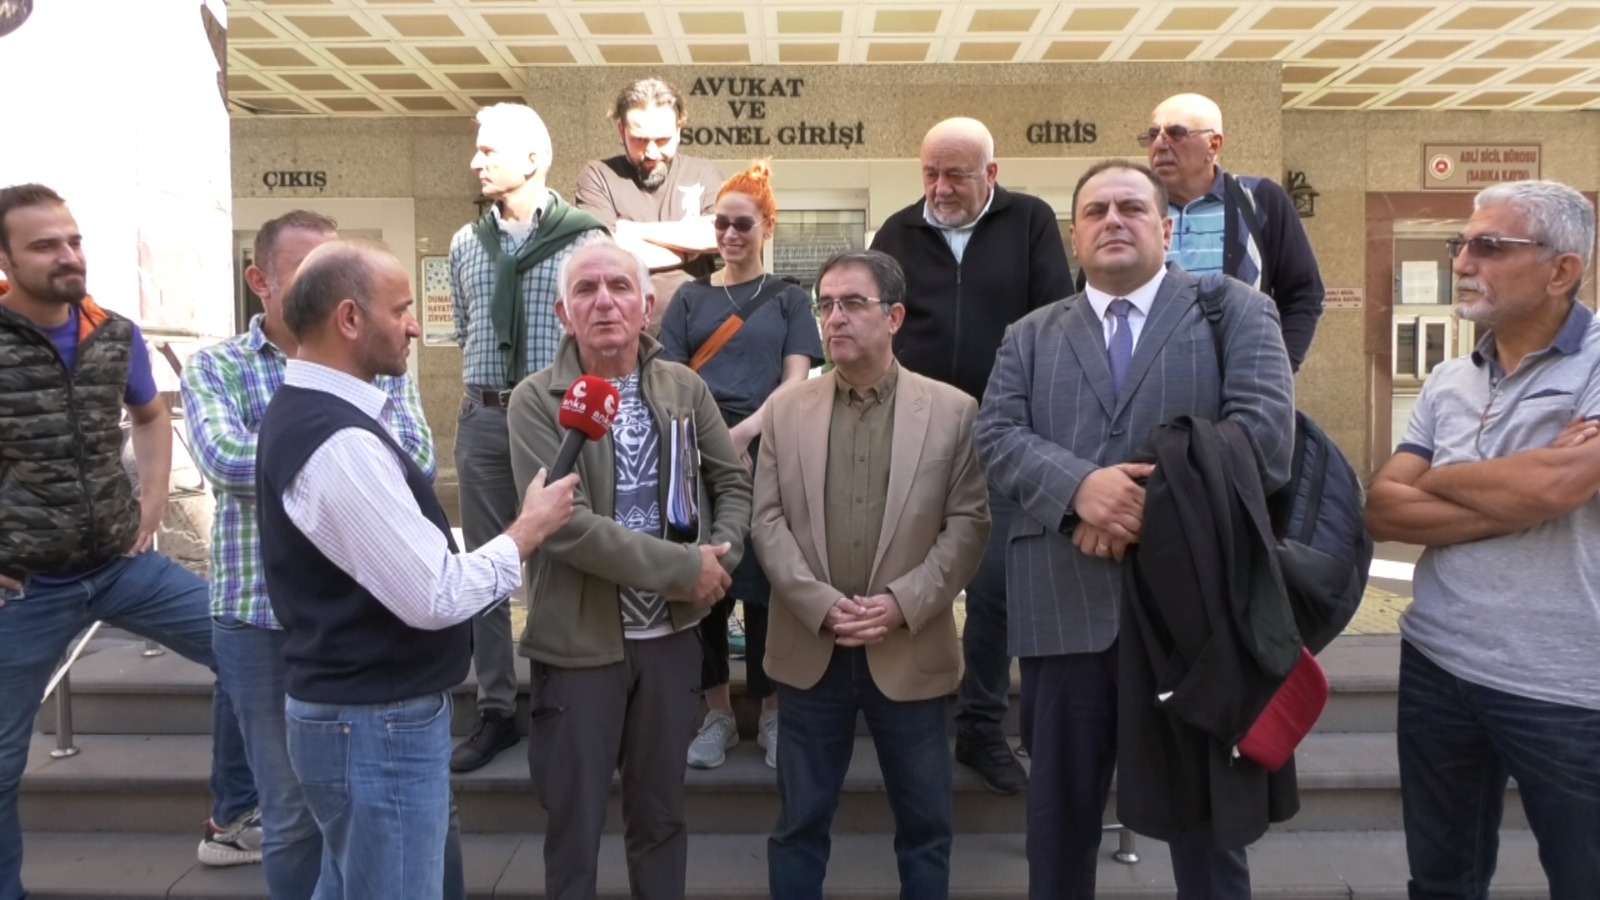 RTEÜ’de tacizi haberleştiren Karafazlı’ bugün yeniden yargının karşısına çıktı (video haber)